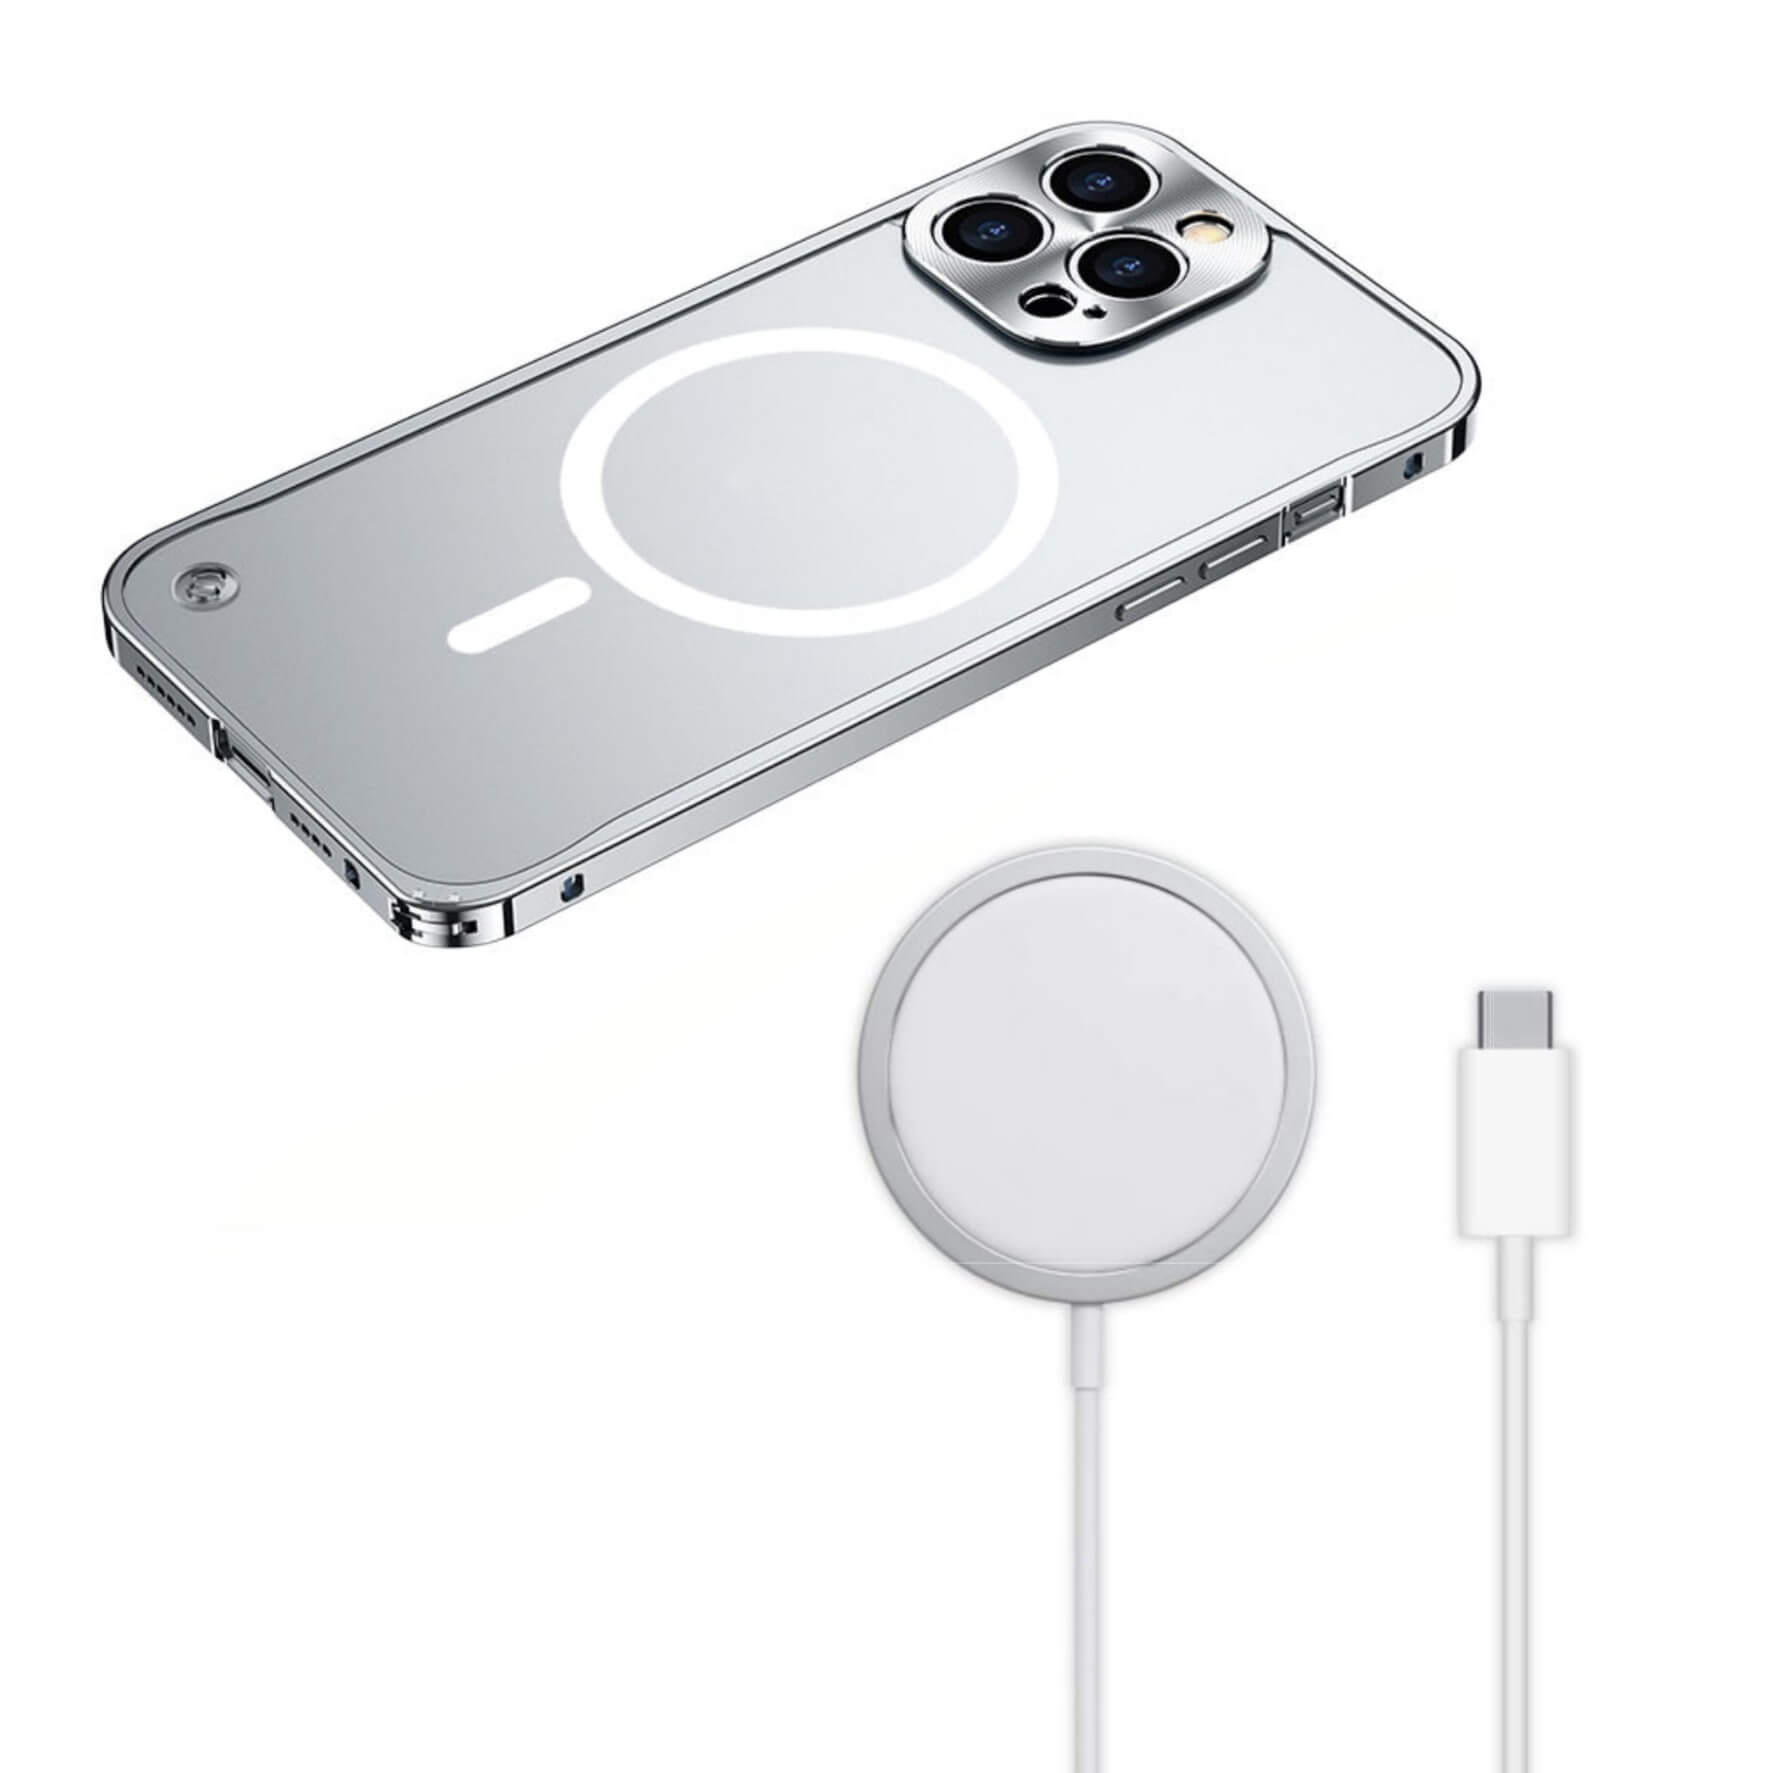 Metal Frame iPhone Case - Luxandluxy